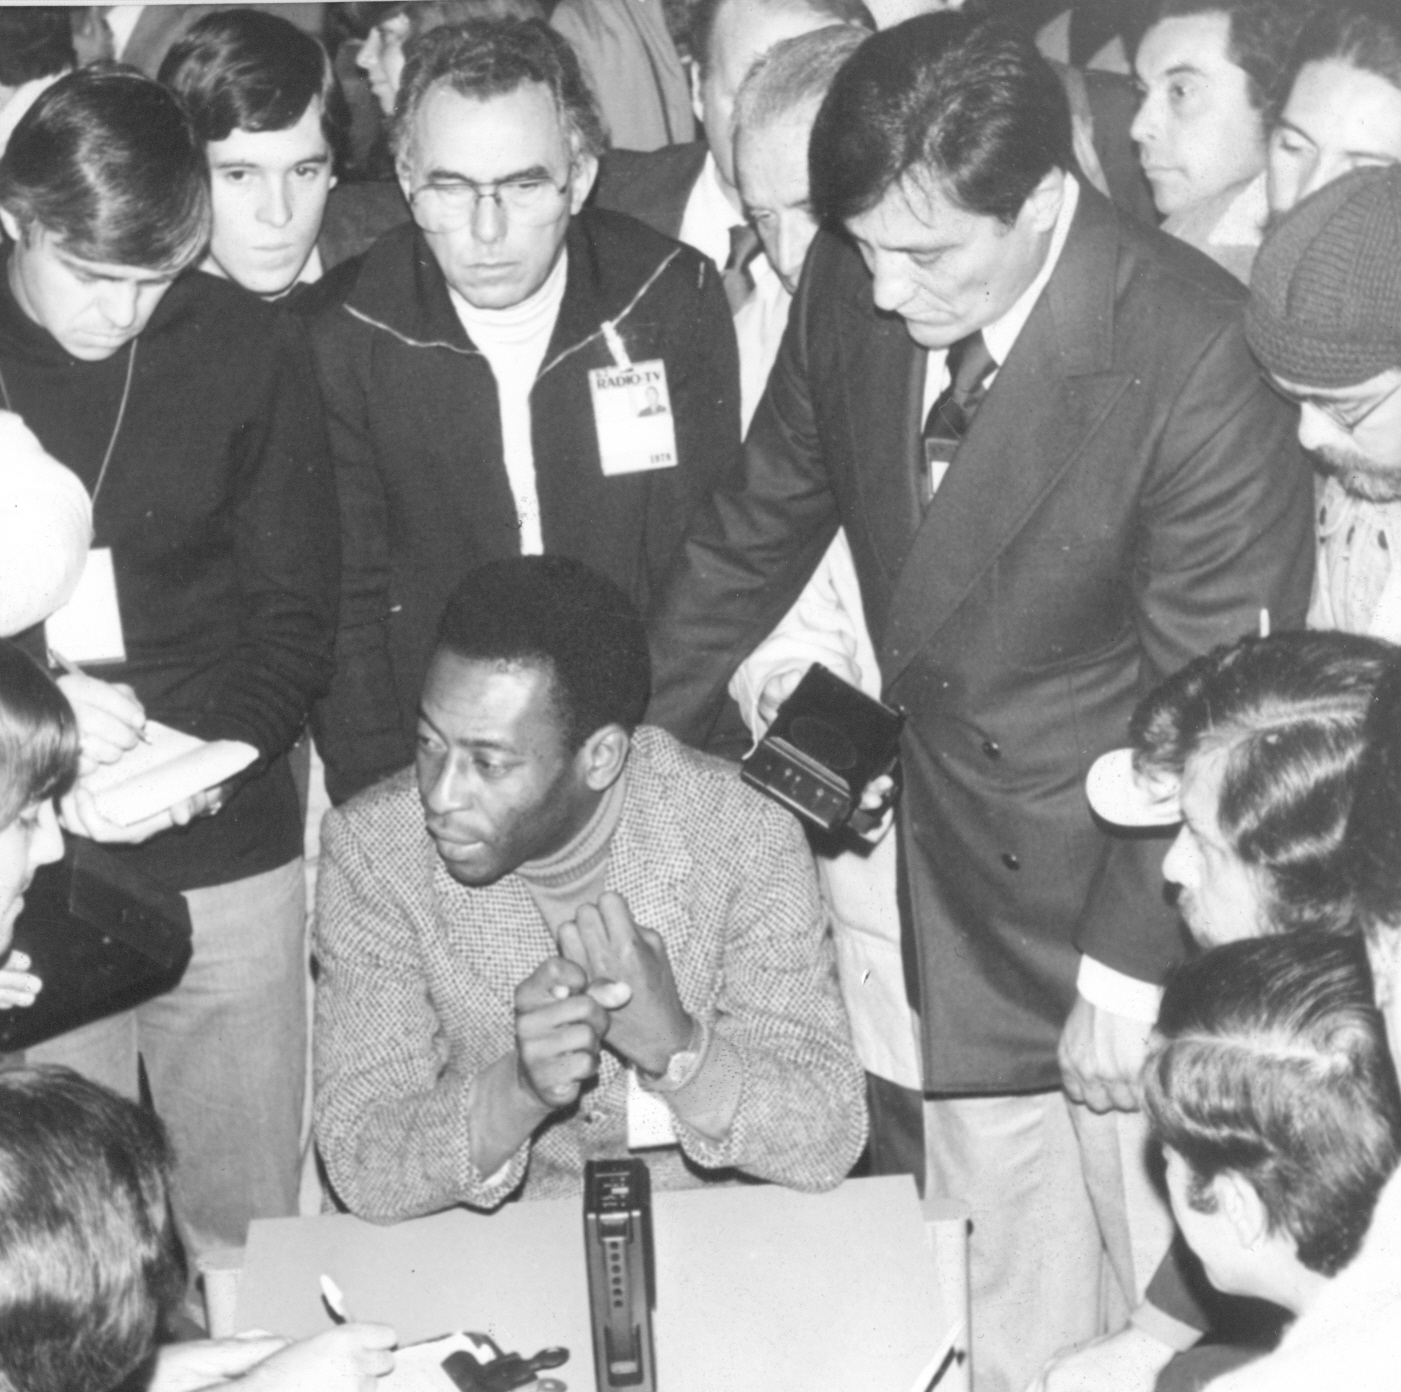 Improvisada conferencia de prensa de Pelé durante el Mundial '78.